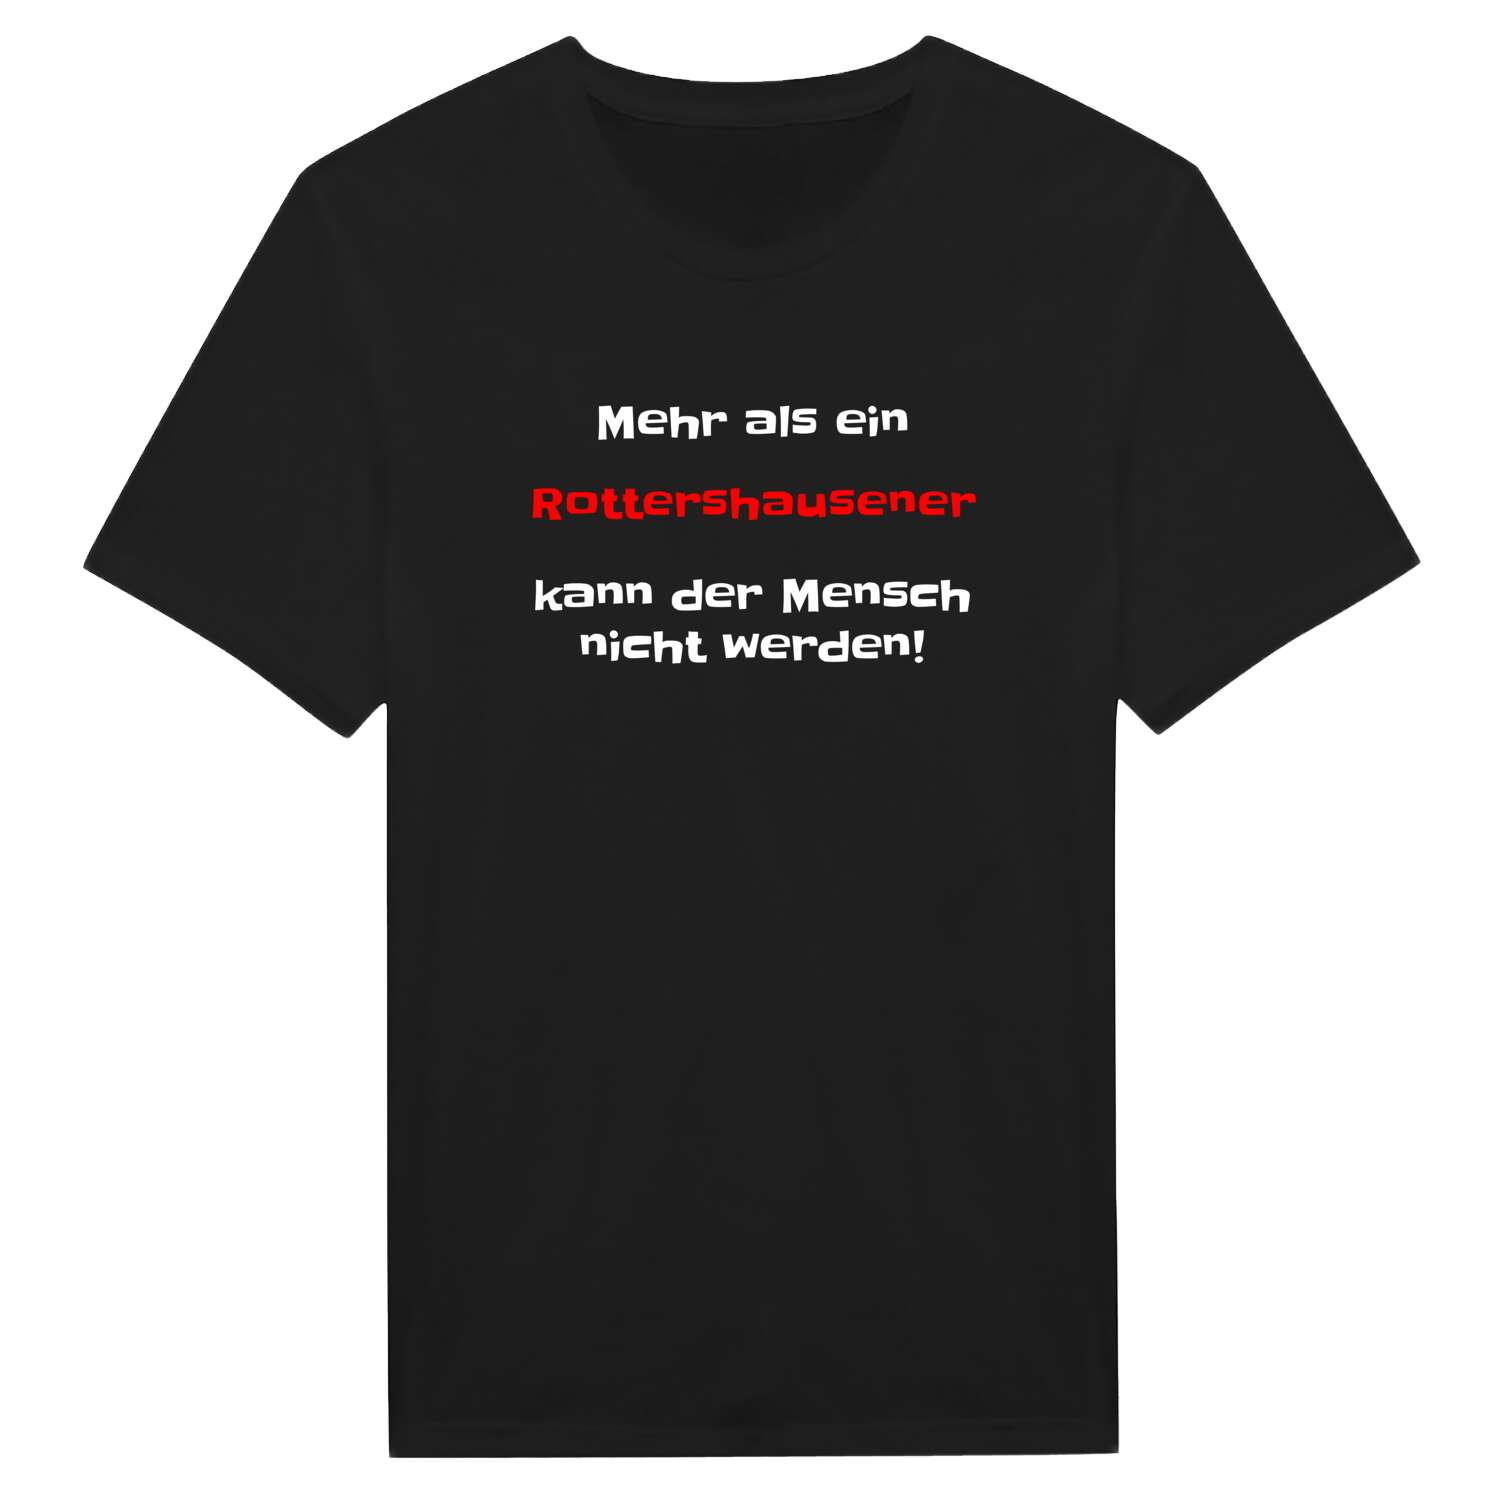 Rottershausen T-Shirt »Mehr als ein«